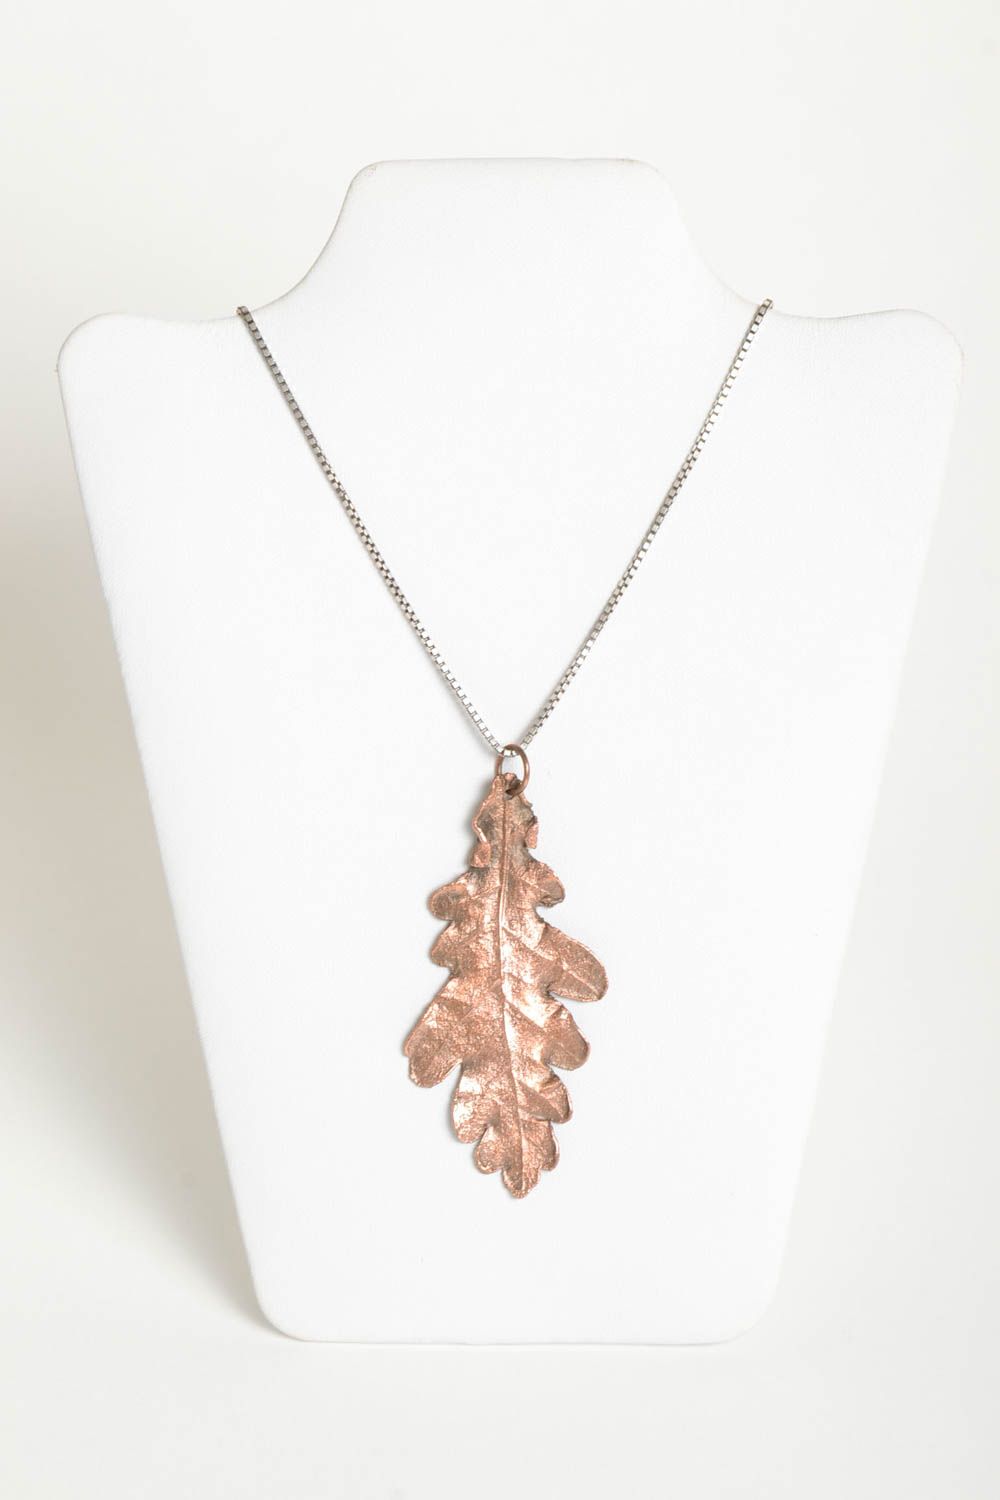 Unusual handmade metal pendant copper pendant designs fashion accessories photo 2